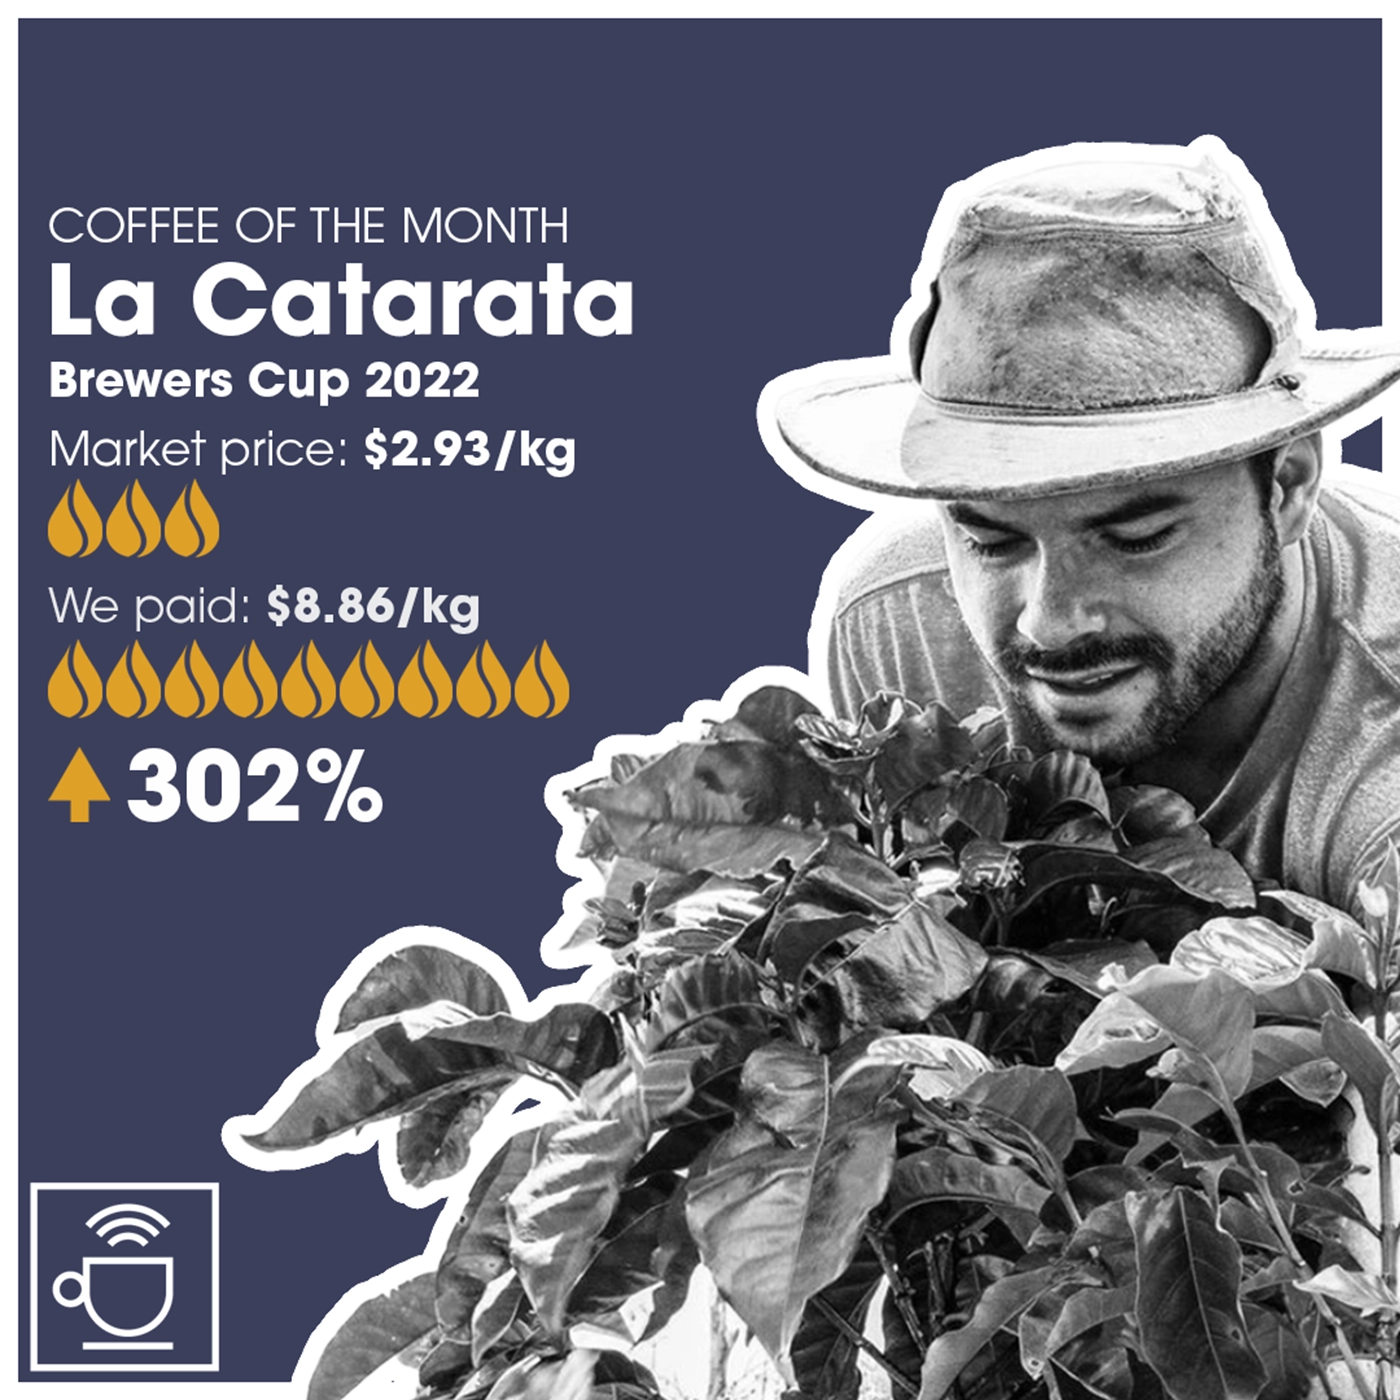 månedens kaffe, la catarata, markedpris $2,93/kg, CleverCoffee har betalt $8,86/kg, 302% over markedsprisen 